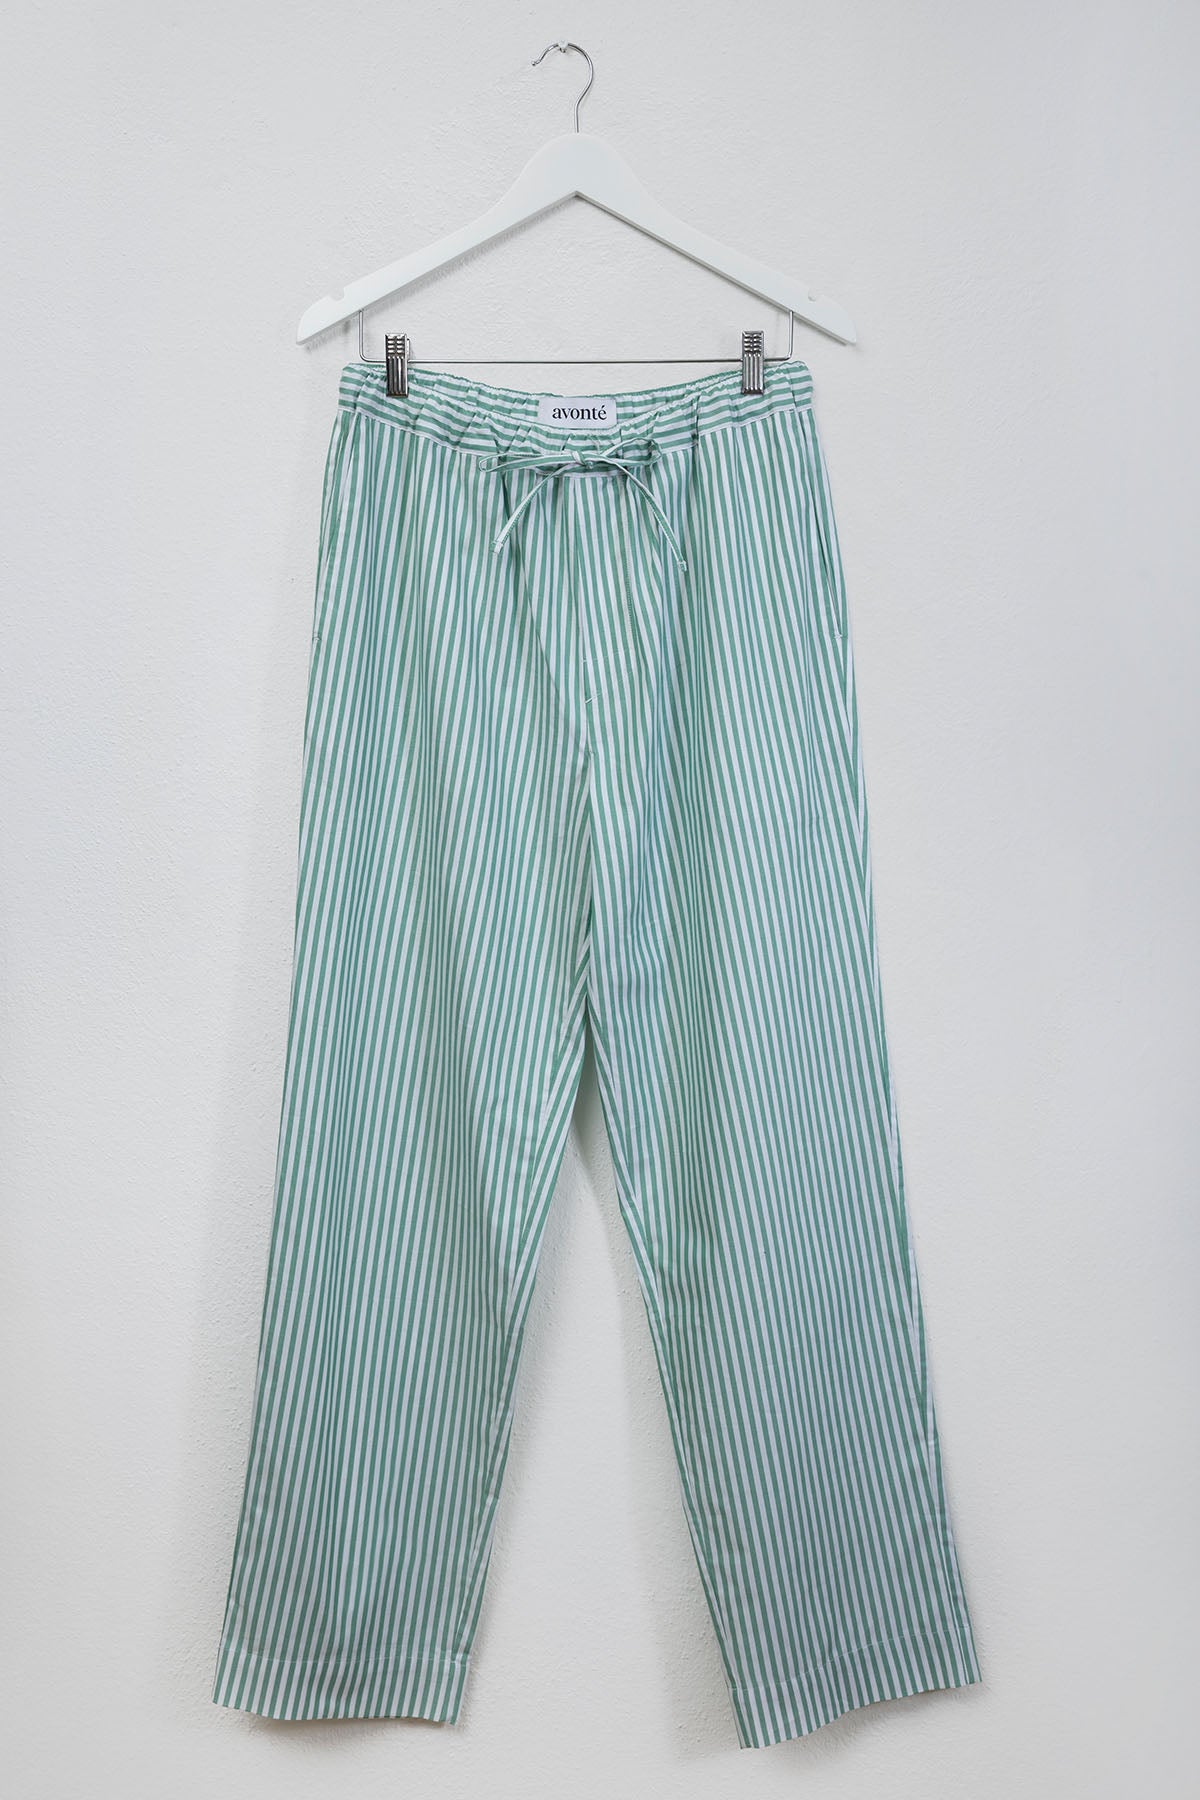 Pyjama Pants in color gratitude green stripes 